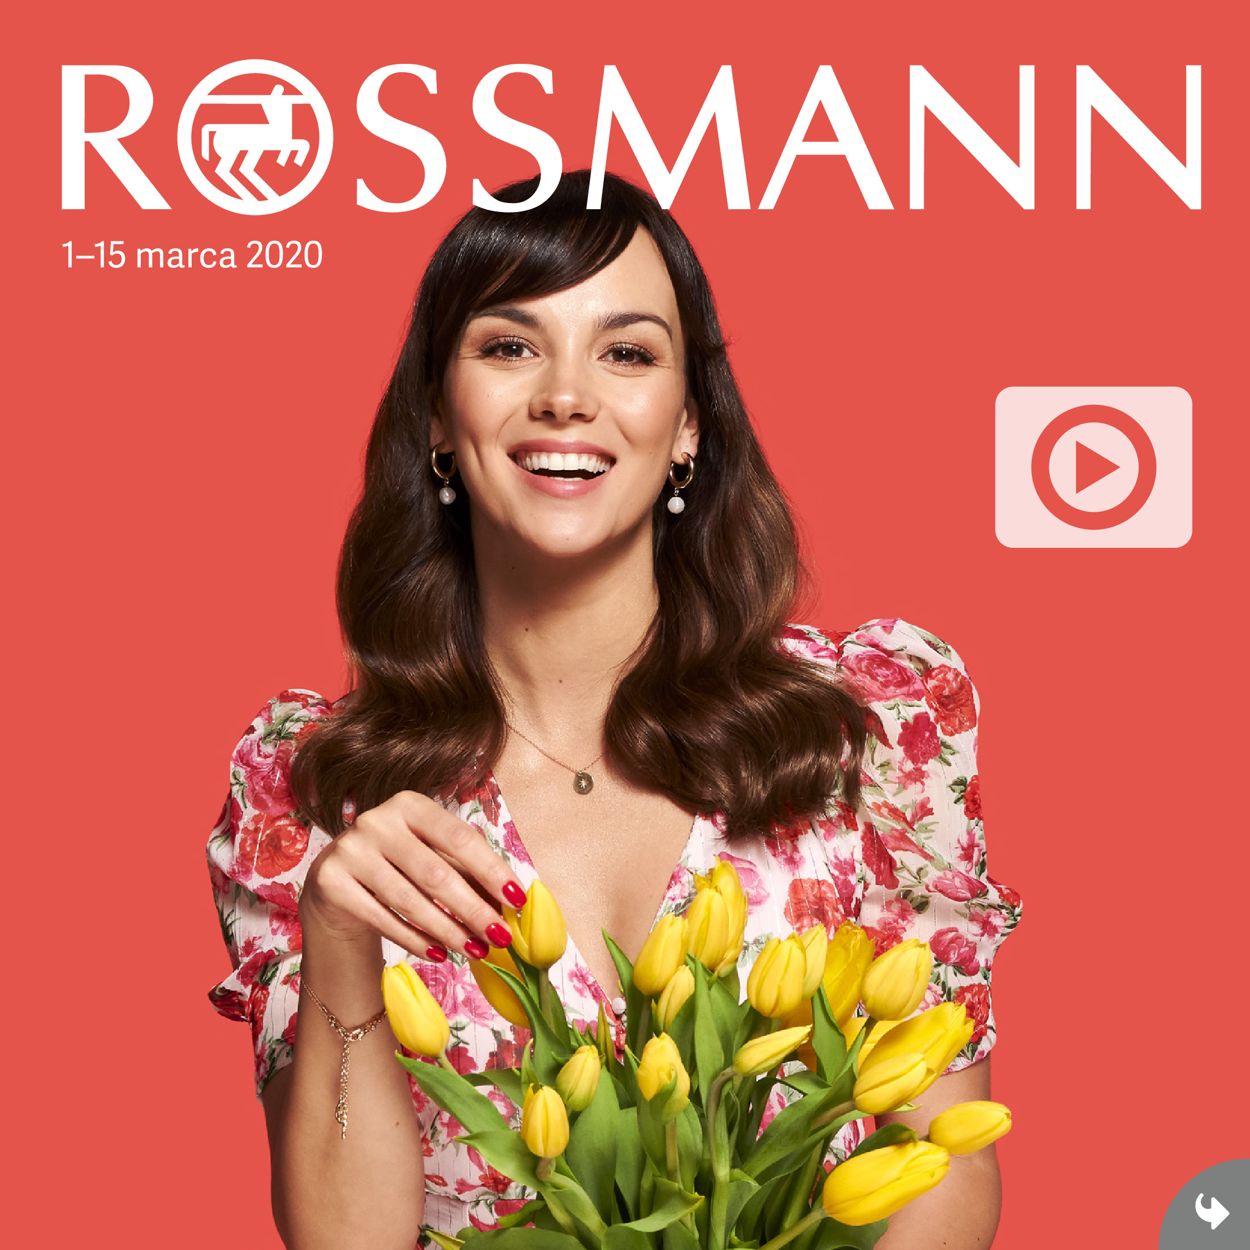 Rossmann Gazetka od 01.03.2020